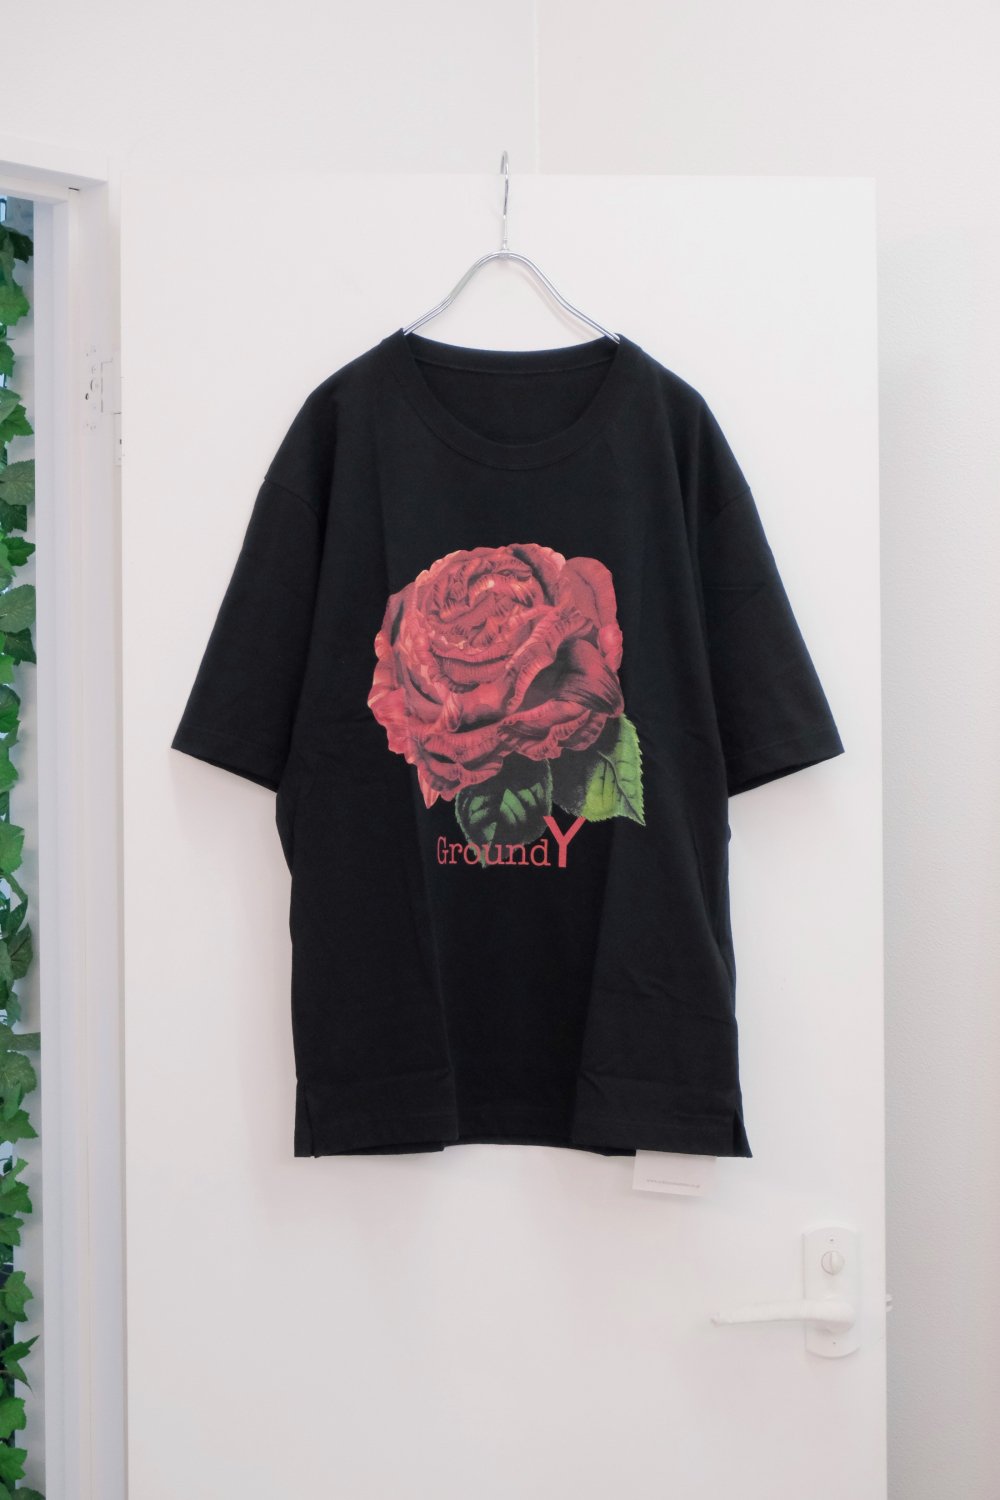 Ground Y [グラウンドワイ] Flower Print Tee Shirts ＜フラワーTシャツ/林大史/薔薇＞ GI-T61-041 2色展開